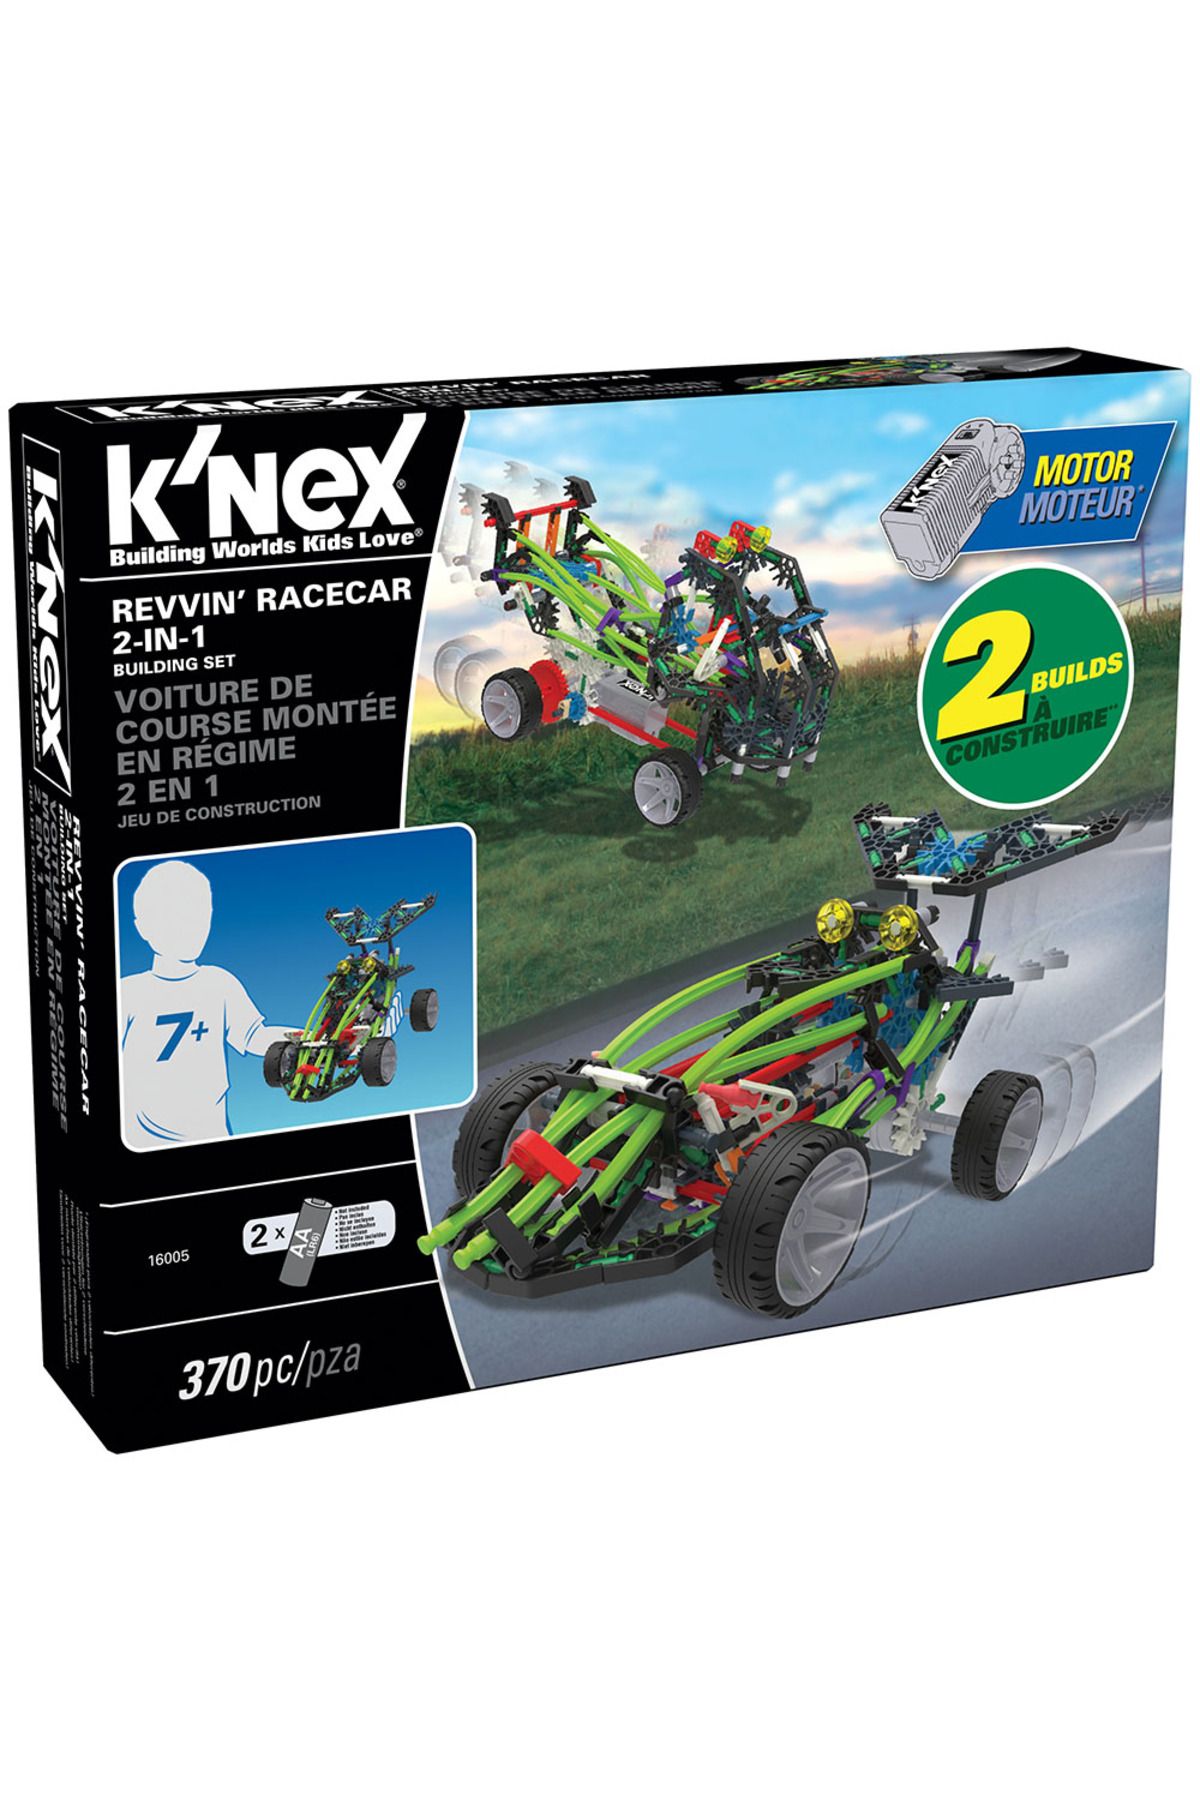 Knex K Nex Yarış Araçları 2 Model (Motorlu) Building Set Knex 16005